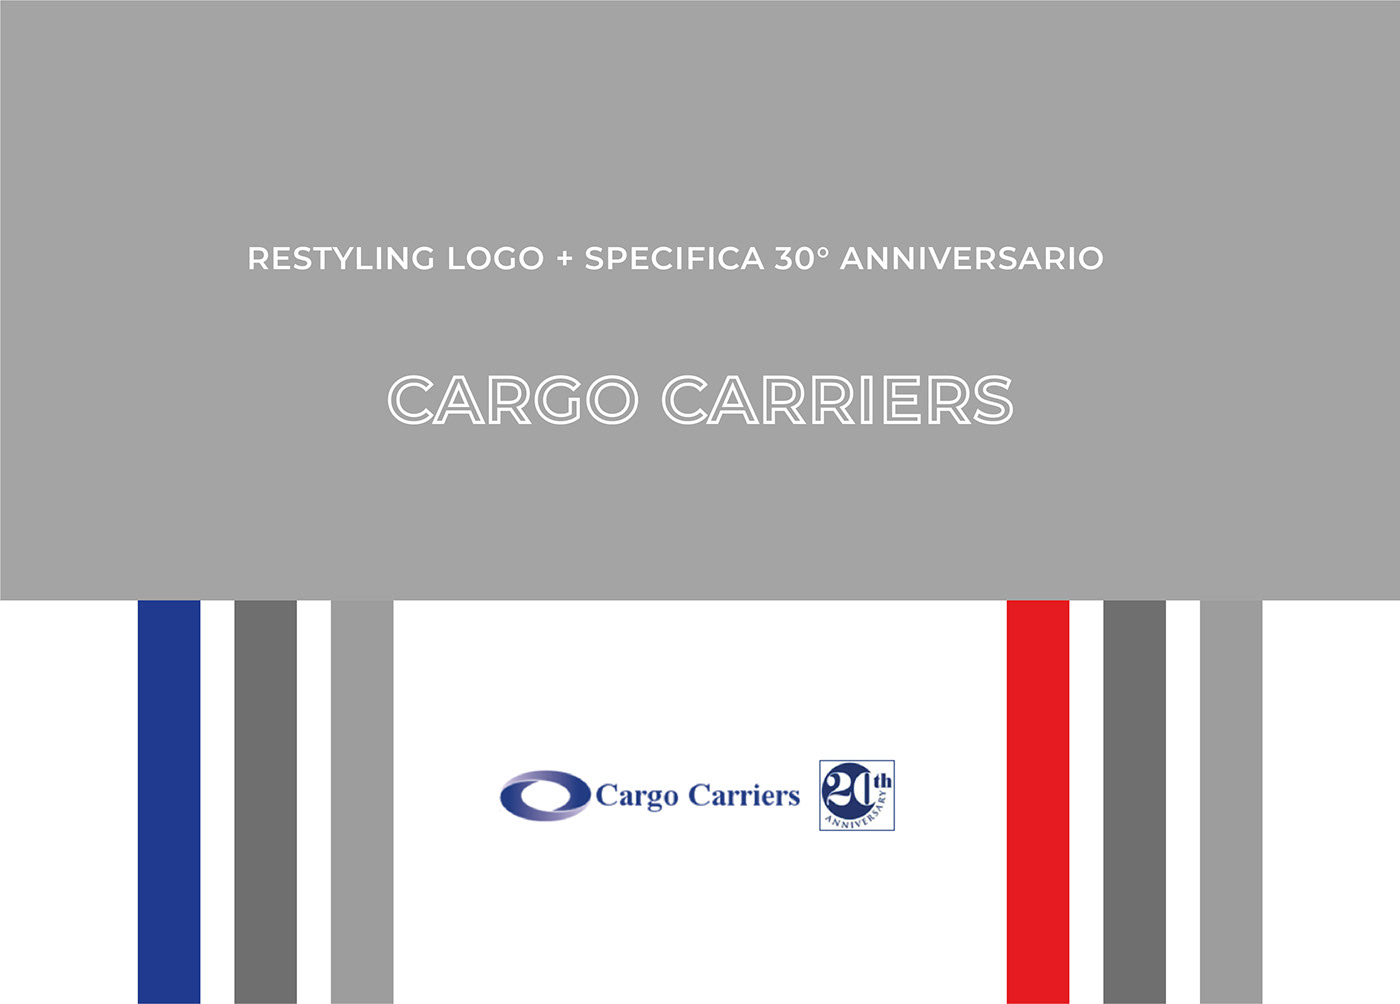 colori istituzionali immagine coordinata LOGISTICA logo logo aziendale Logotipo marchio pittogramma   Restyling logo Trasporti